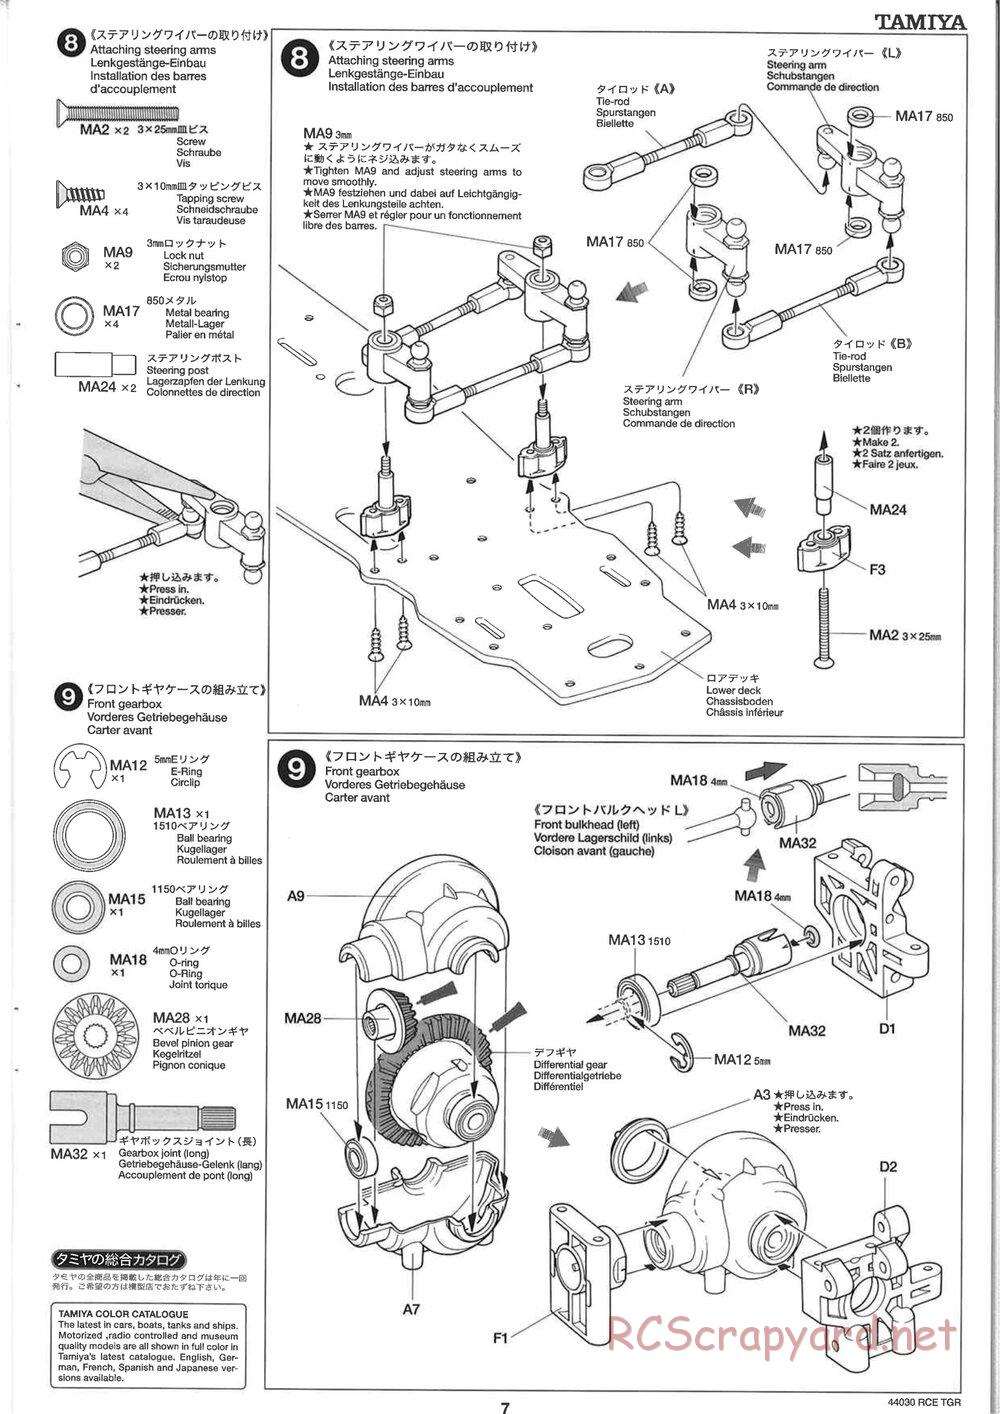 Tamiya - TGR Chassis - Manual - Page 7